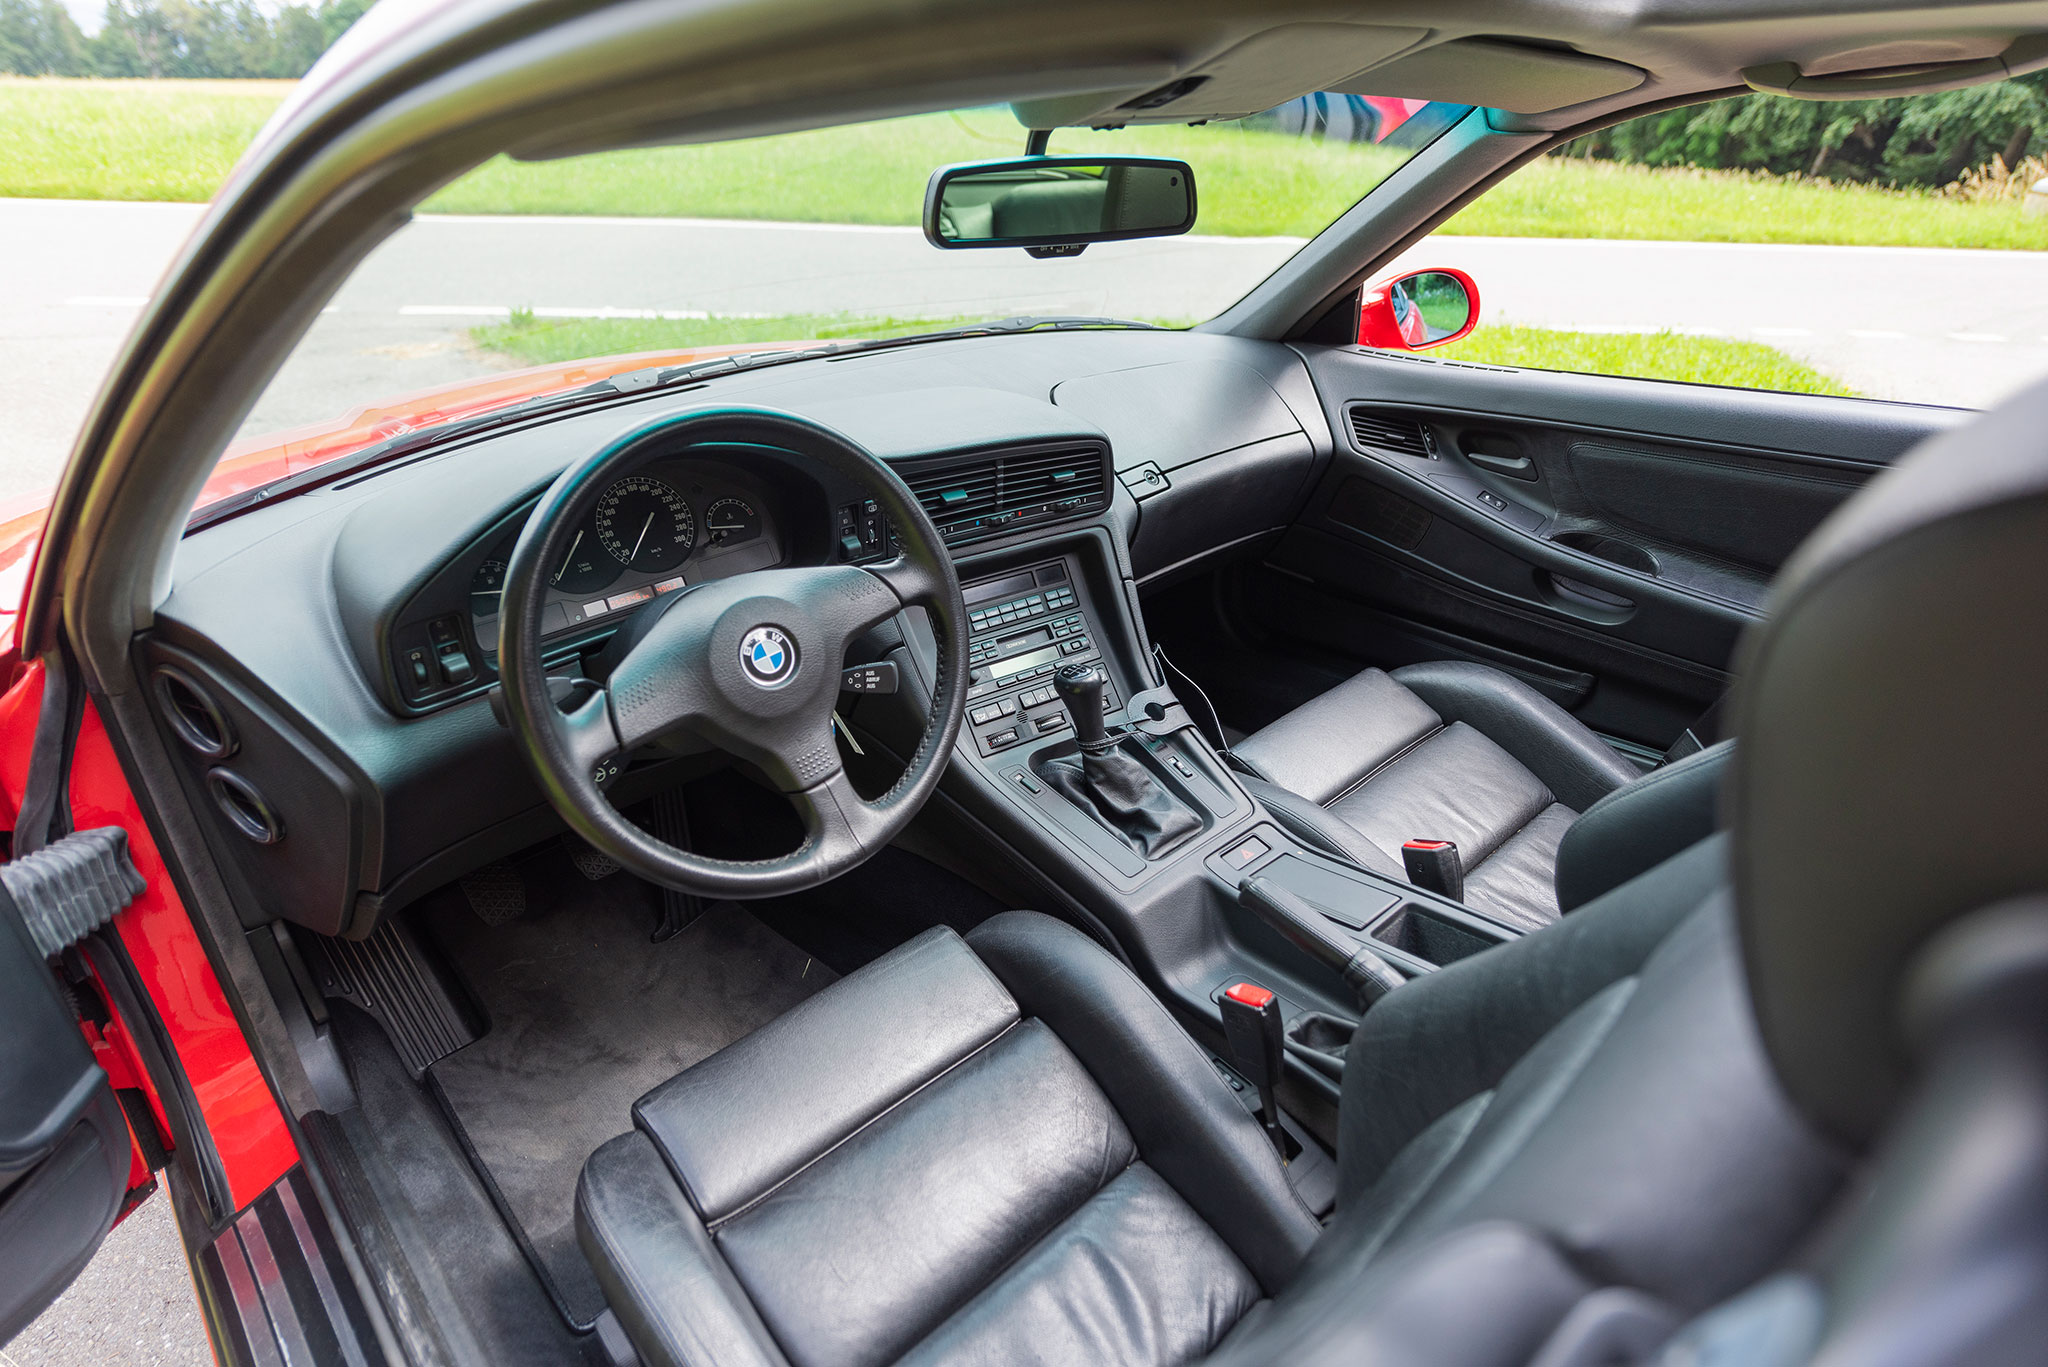 1992 BMW 850i la voiture de notre essai présent des sièges en cuir de buffle anthracite.